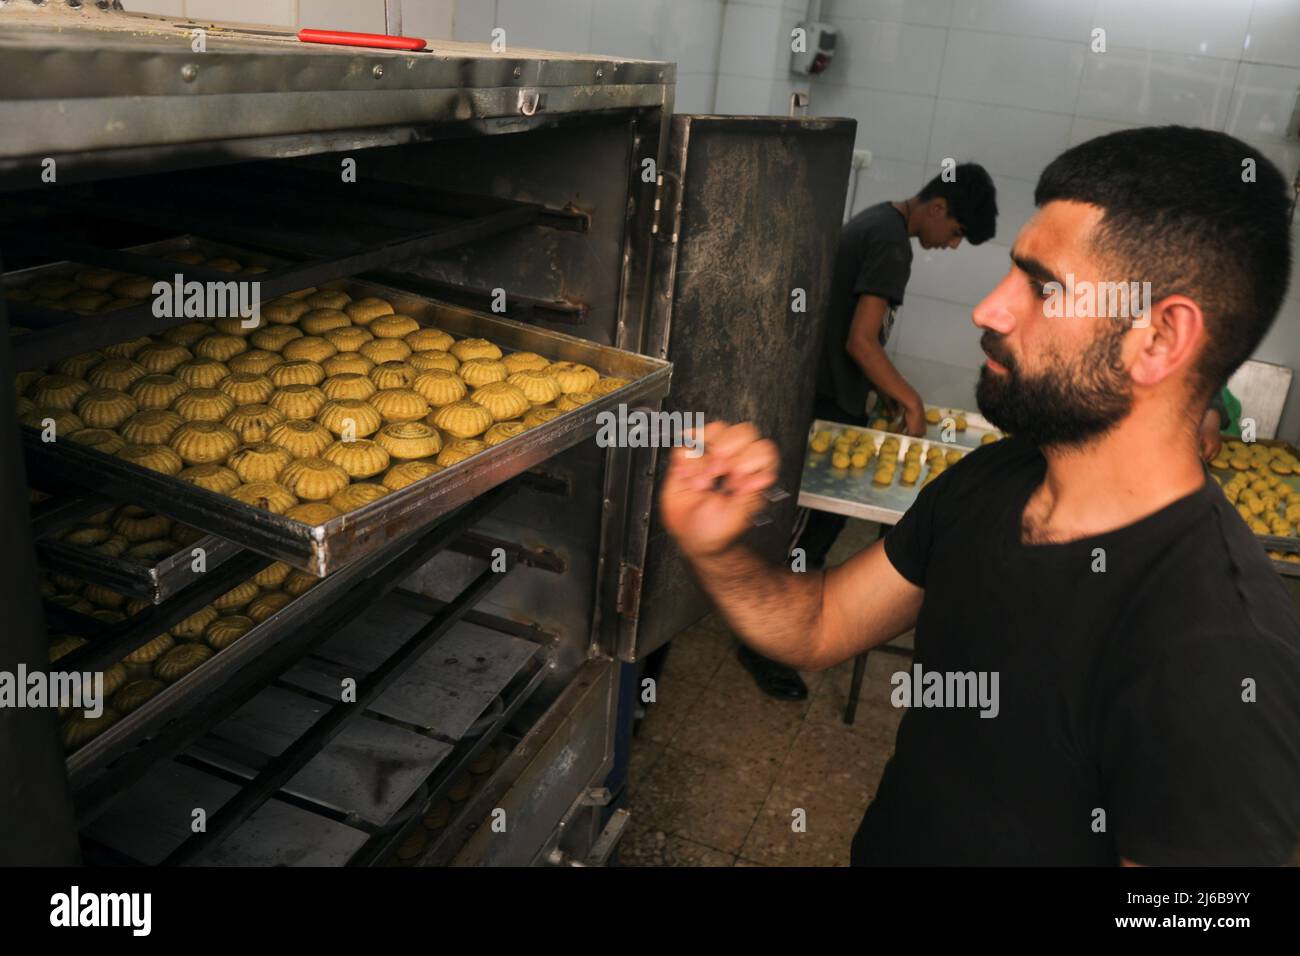 Il palestinese Ammar Abu Rumailah mette vassoi di dolci tradizionali di Eid  nel forno per cuocere prima di Eid al-Fitr nella città vecchia di Nablus,  nella Cisgiordania occupata da Israele, 27 aprile